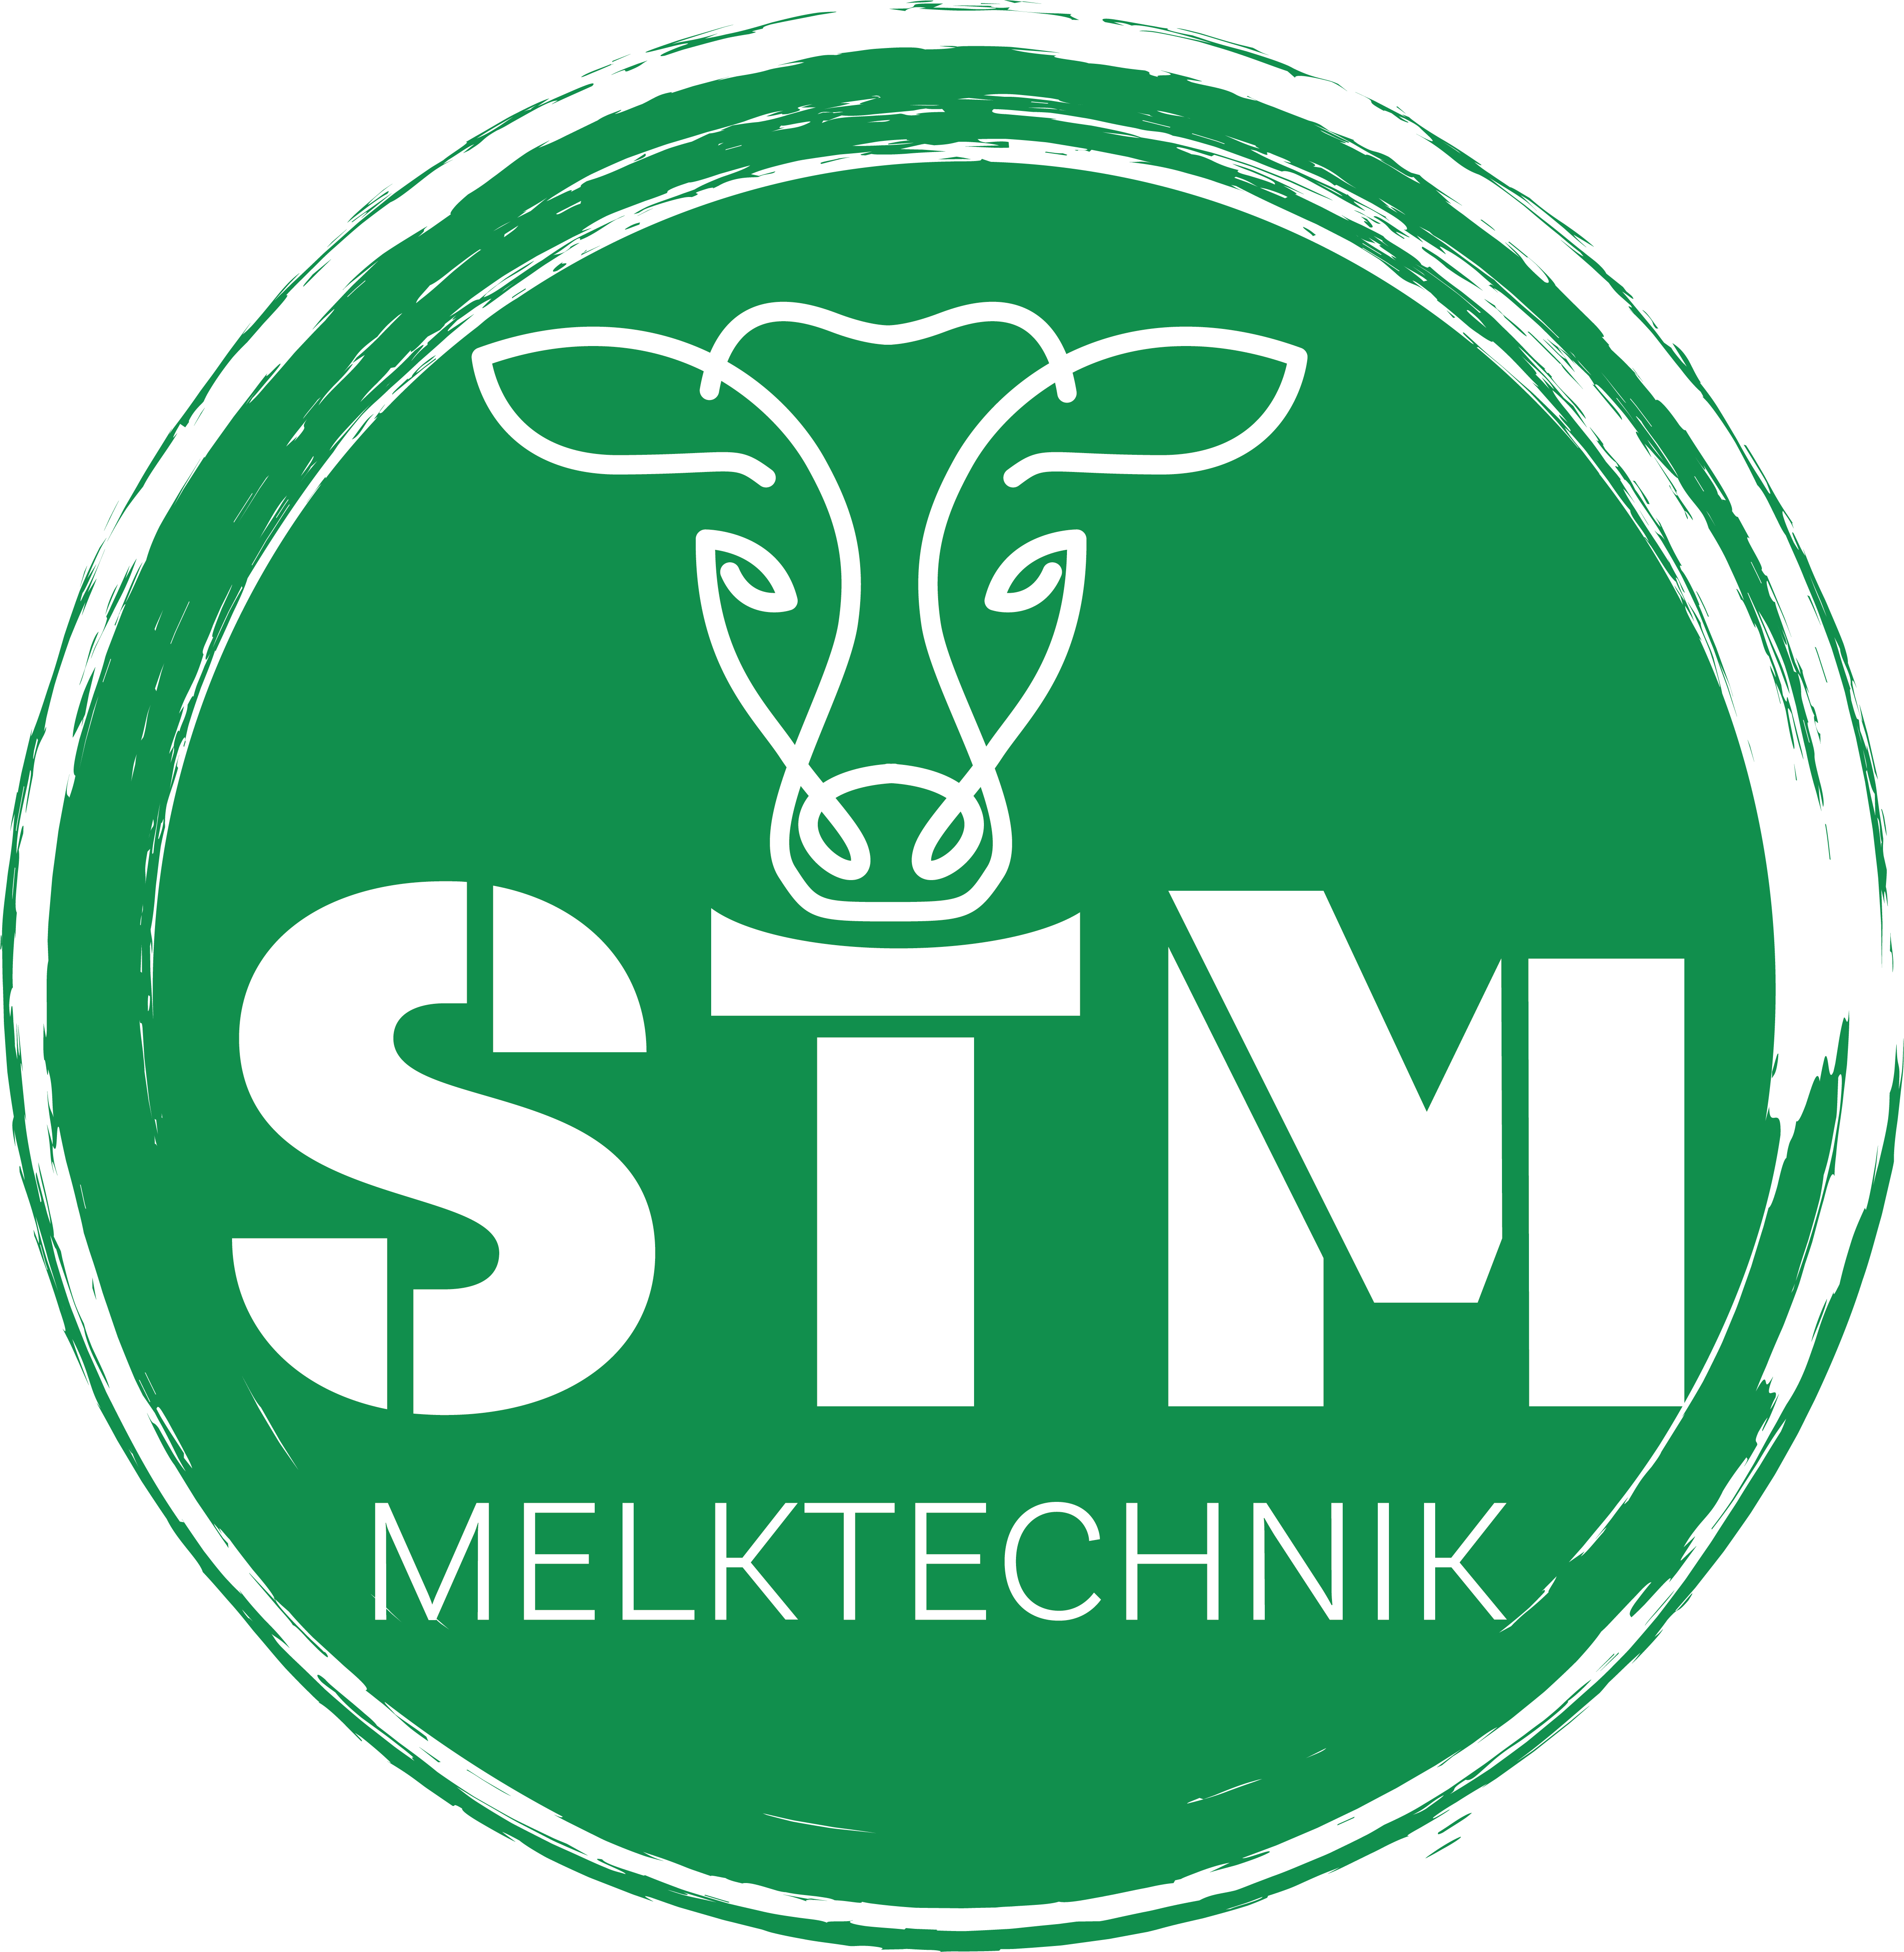 Service Team Milch - Melk- und Herdentechnik